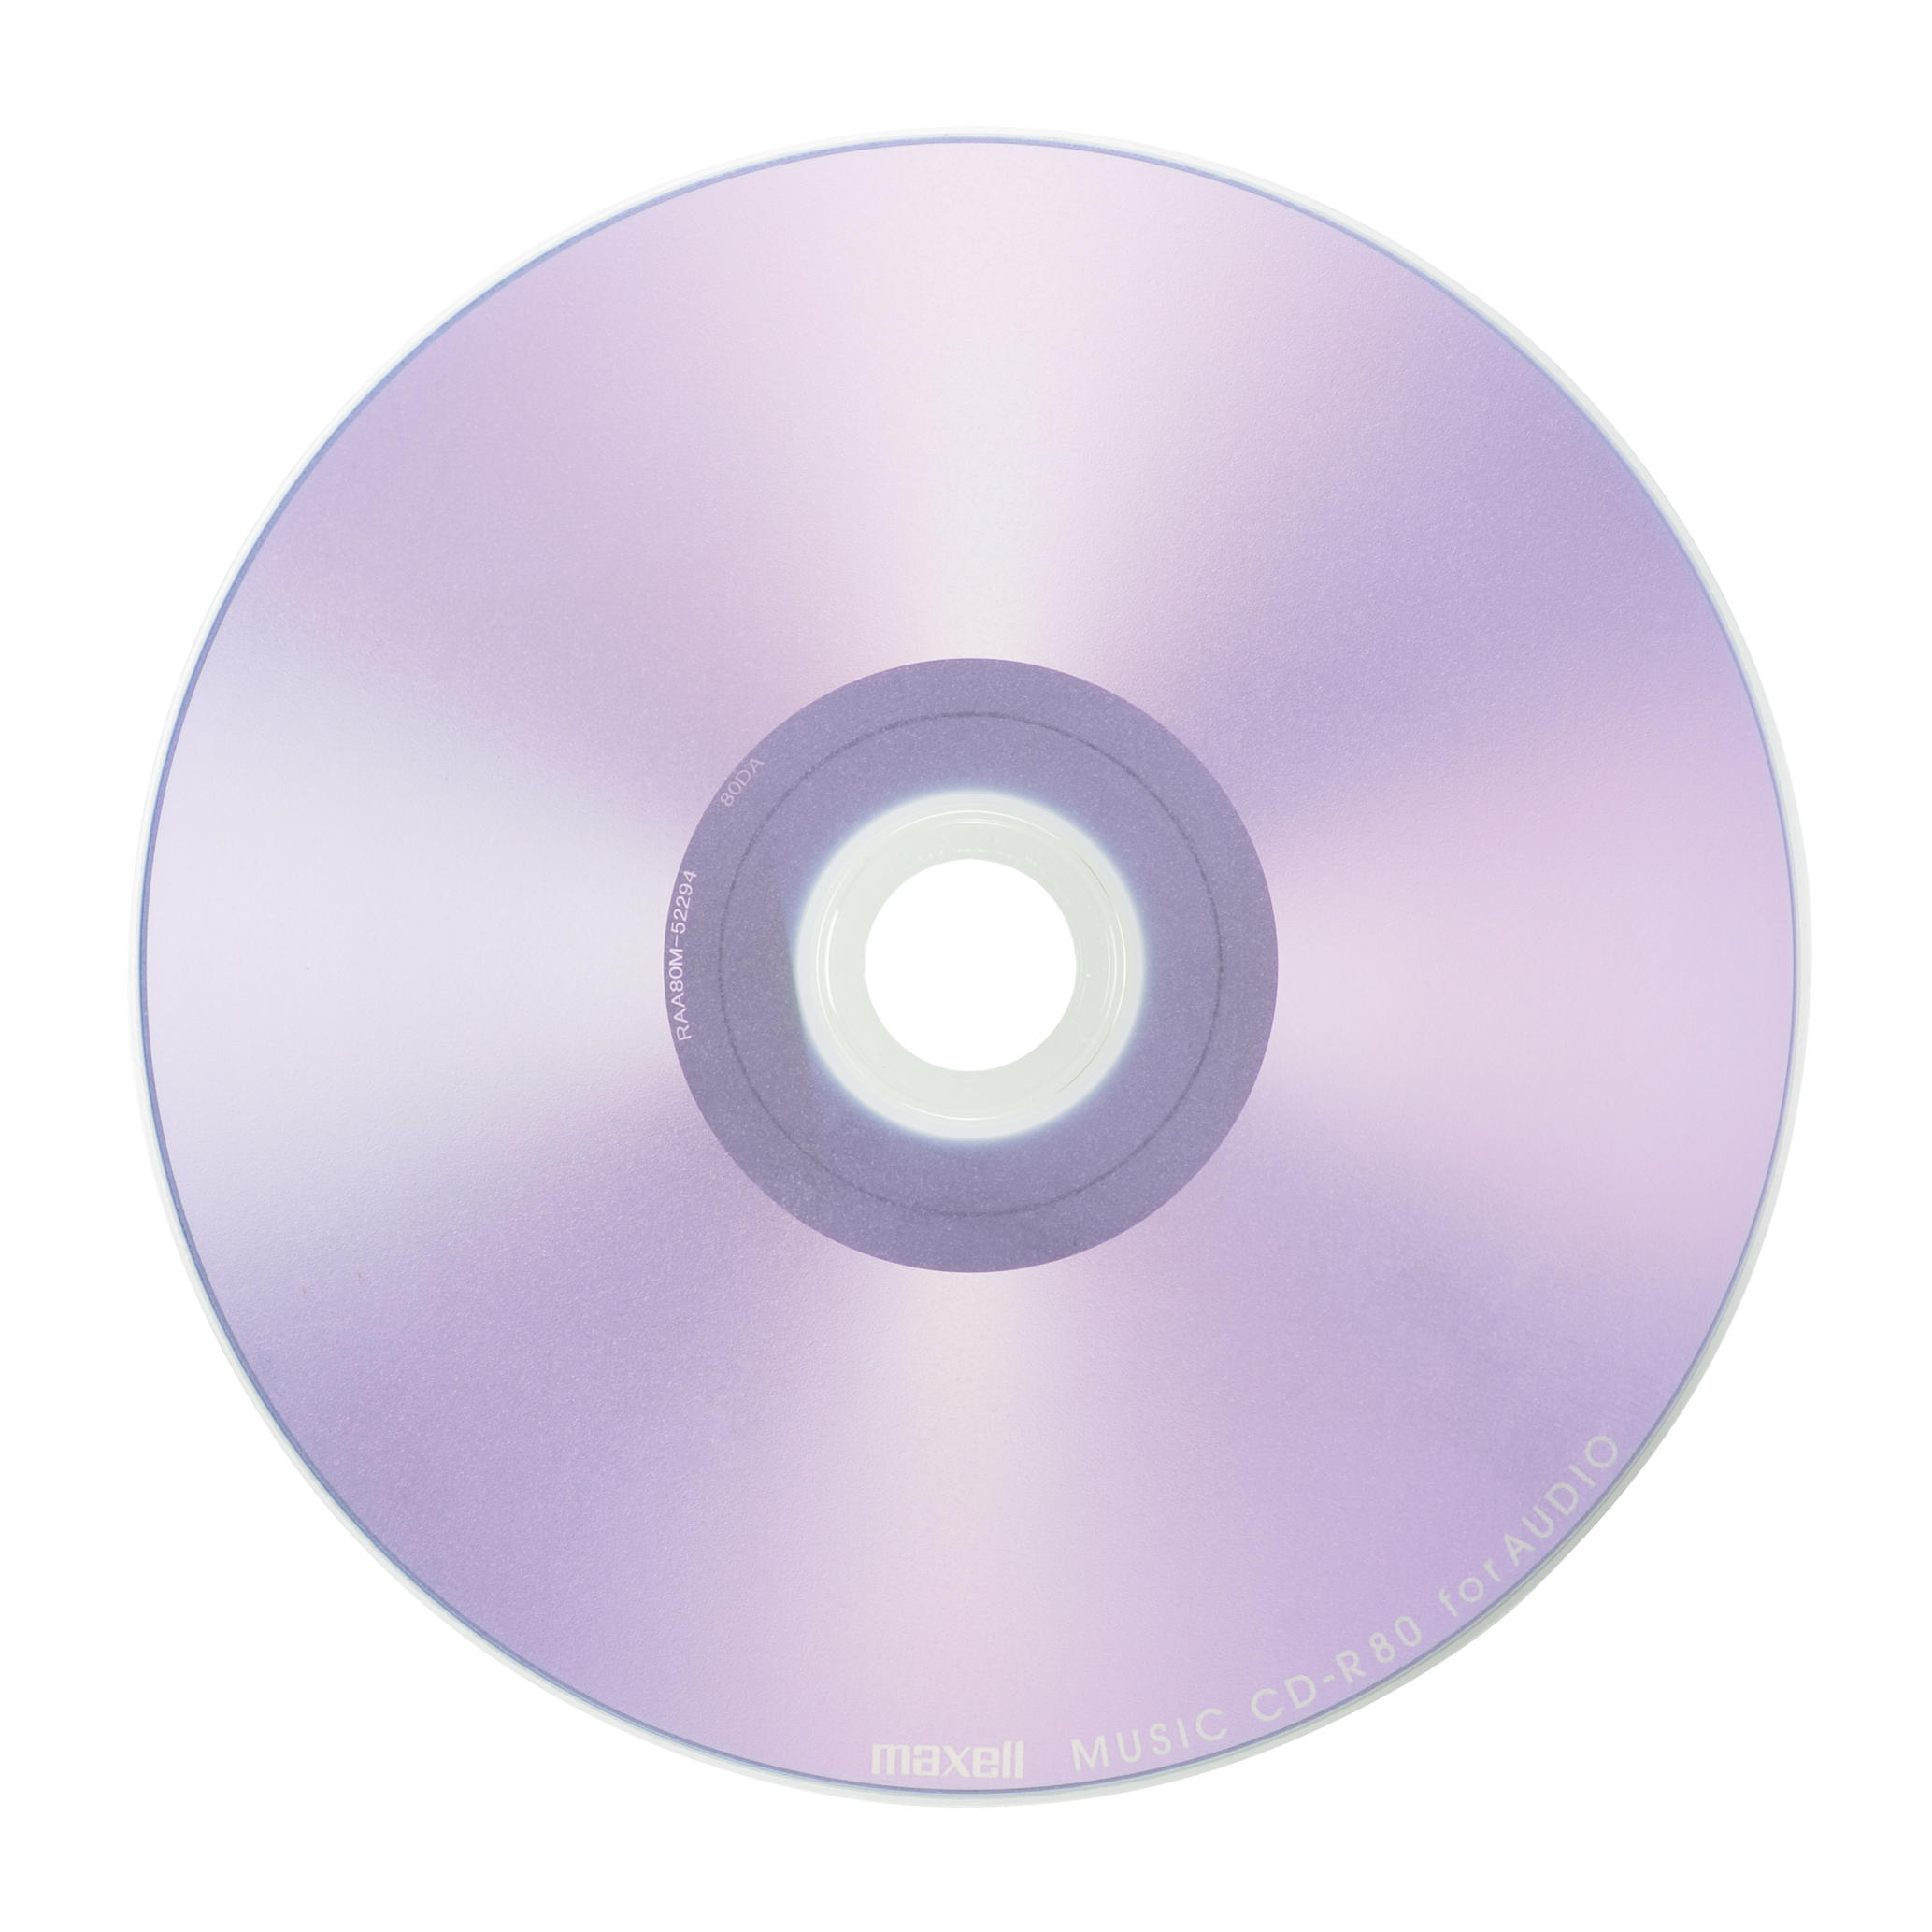 人気定番の マクセル 音楽用CD-R 80分 30枚パック maxell カラーMIX